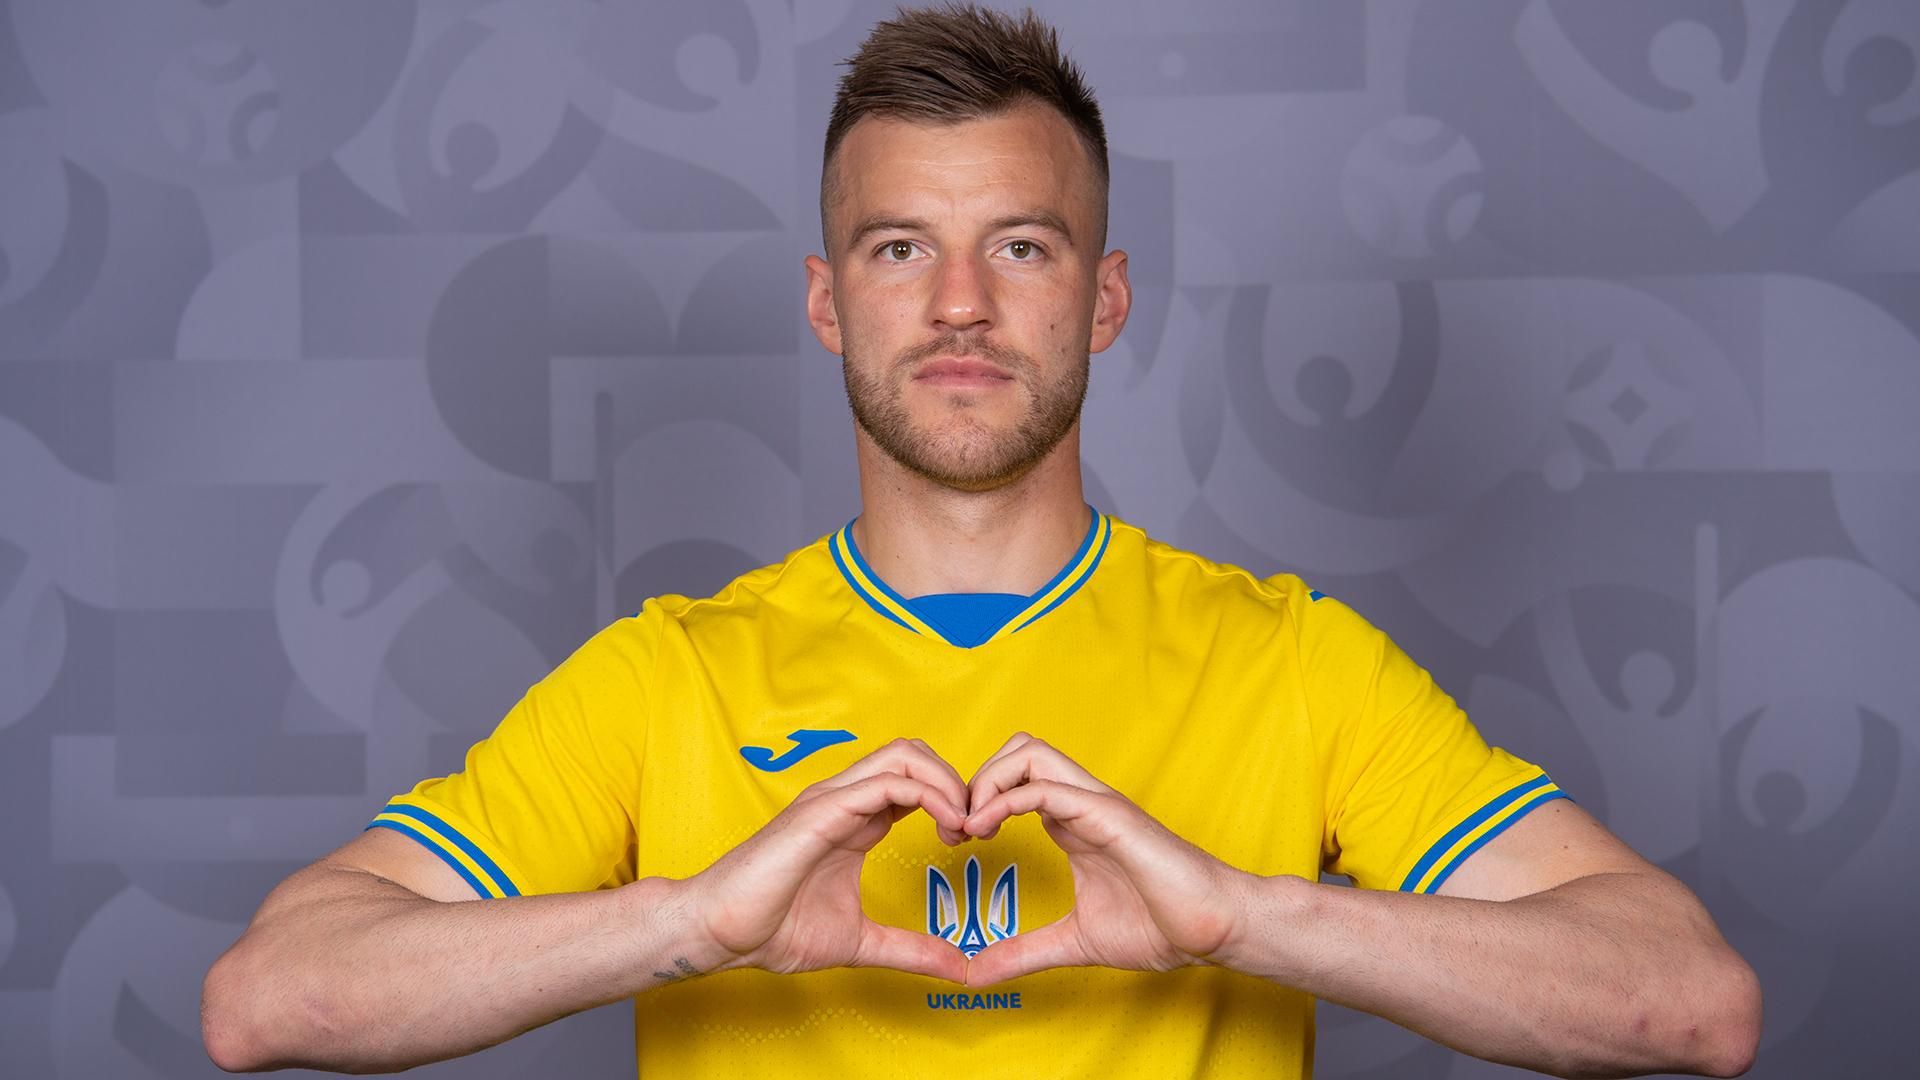 Украина сыграет против Нидерландов на Евро-2020 без лозунга "Героям слава" на форме: фото